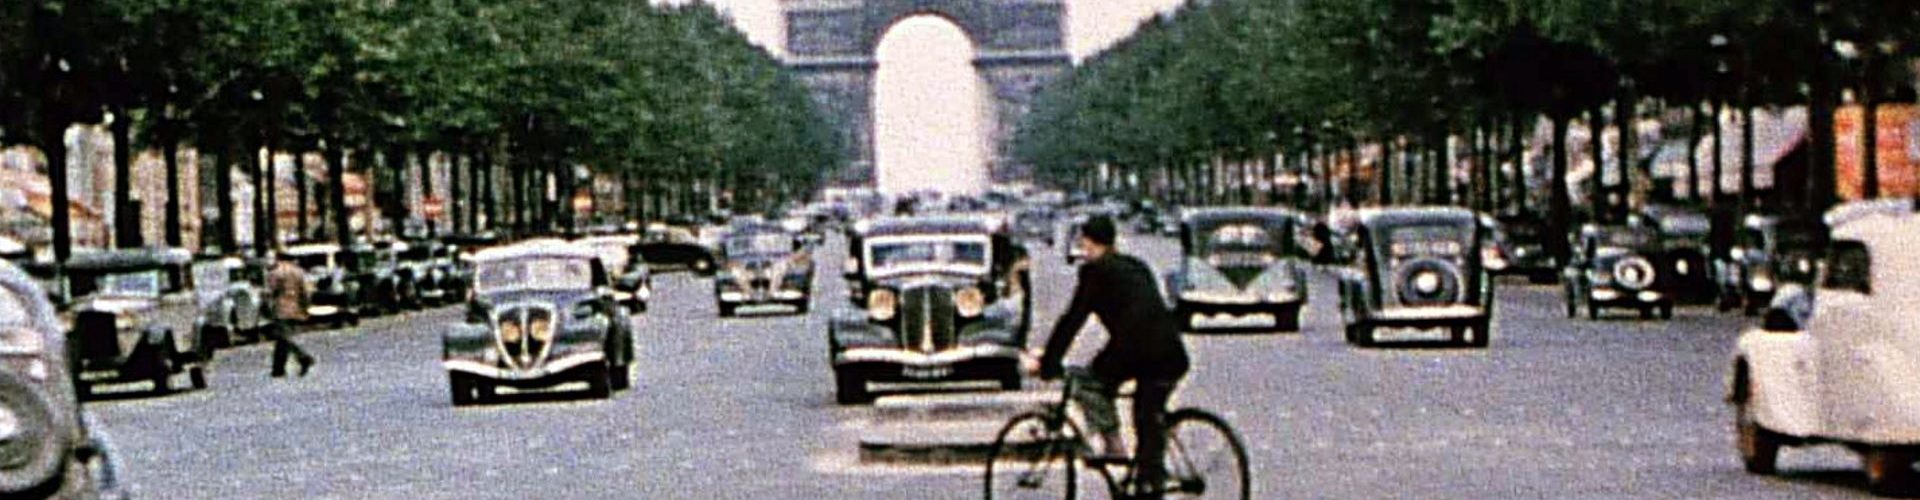 Łuk triumfalny w Paryżu na fotografii z 1939 roku.